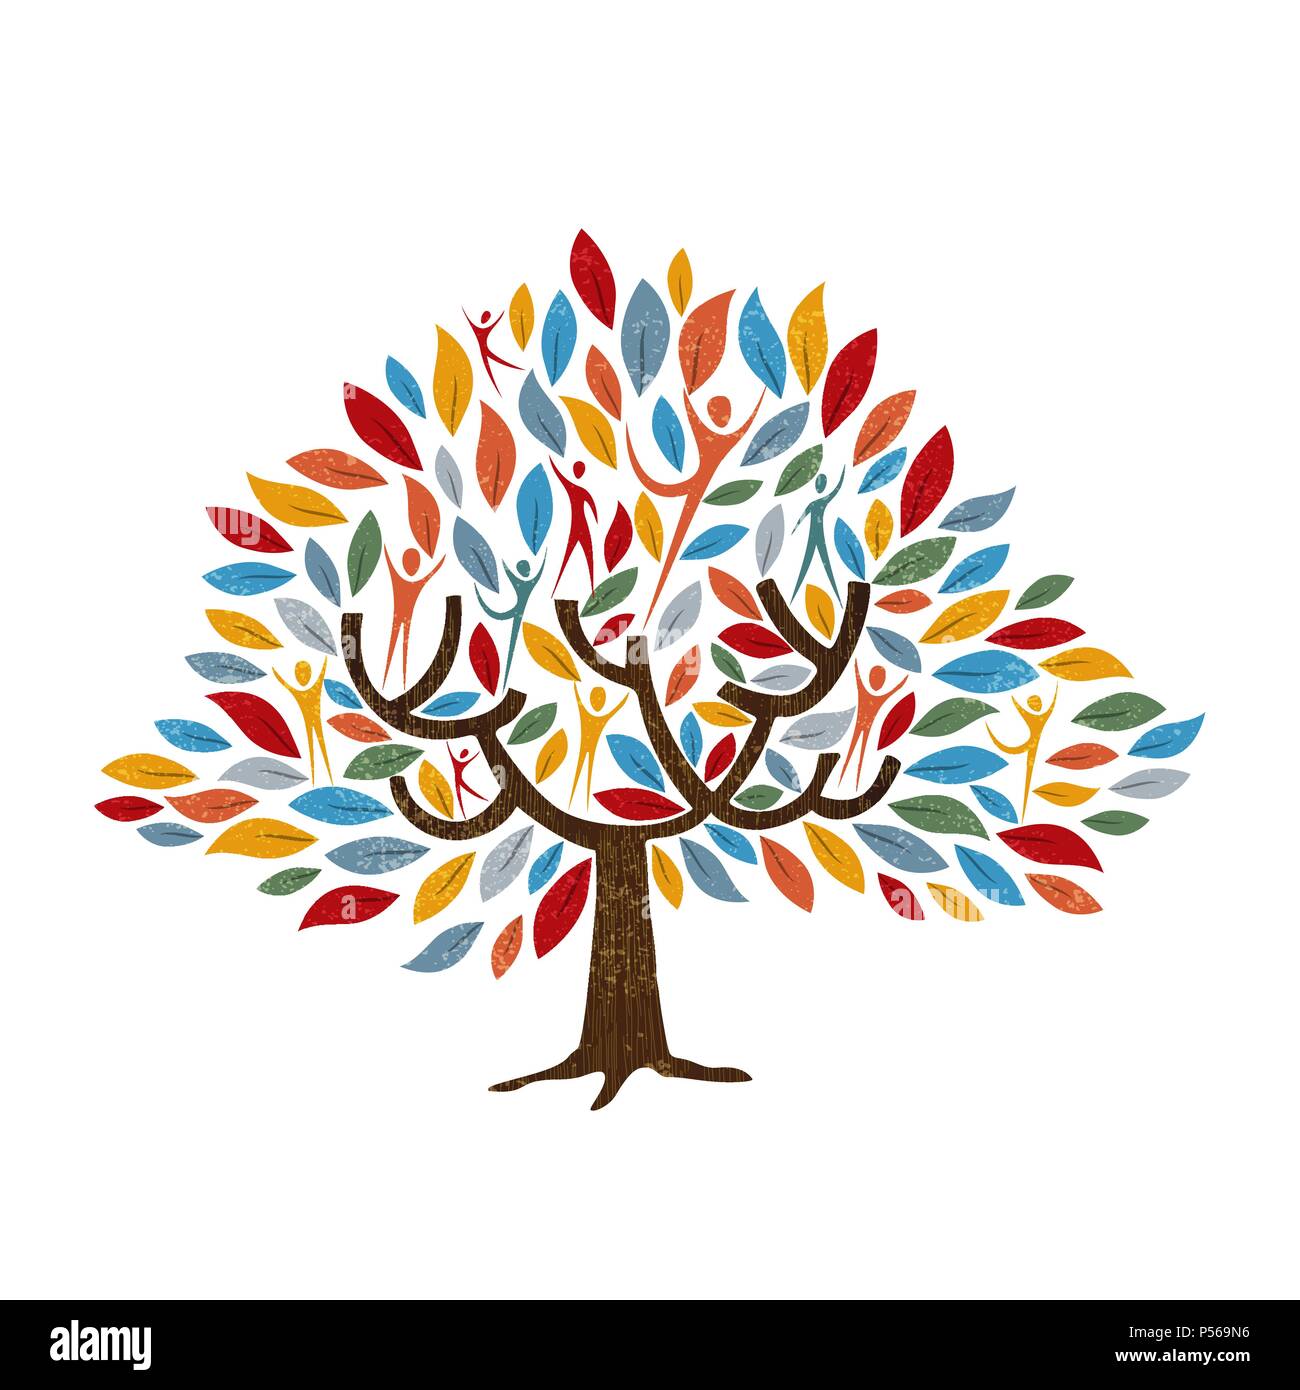 Family Tree Symbol mit Menschen und Farbe verlässt. Konzept Abbildung für die Gemeinschaft helfen, Umwelt oder Kultur der Vielfalt. EPS 10 Vektor. Stock Vektor